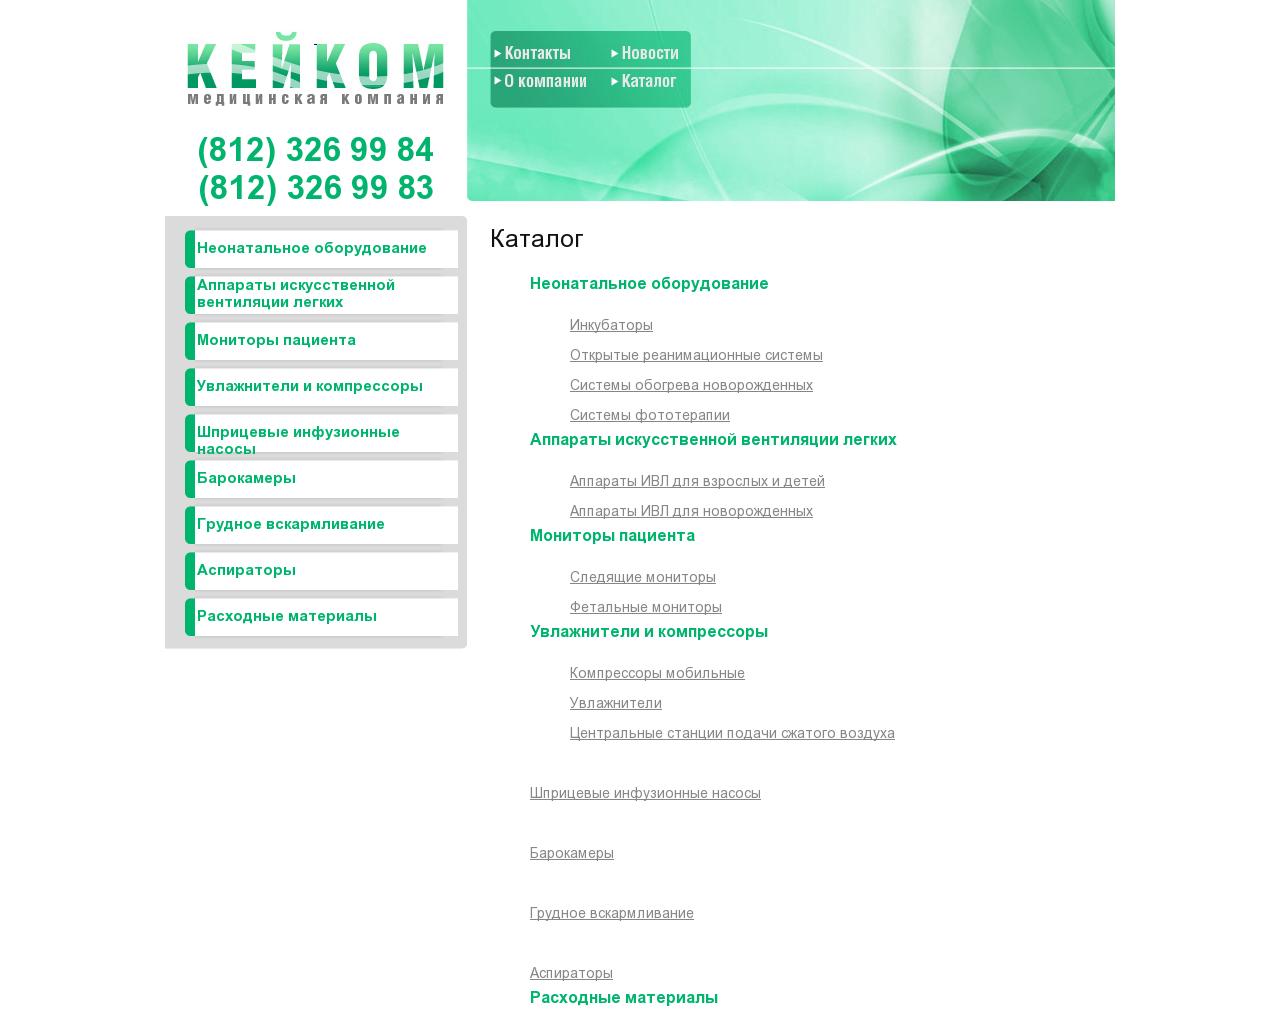 Изображение сайта keykom.ru в разрешении 1280x1024